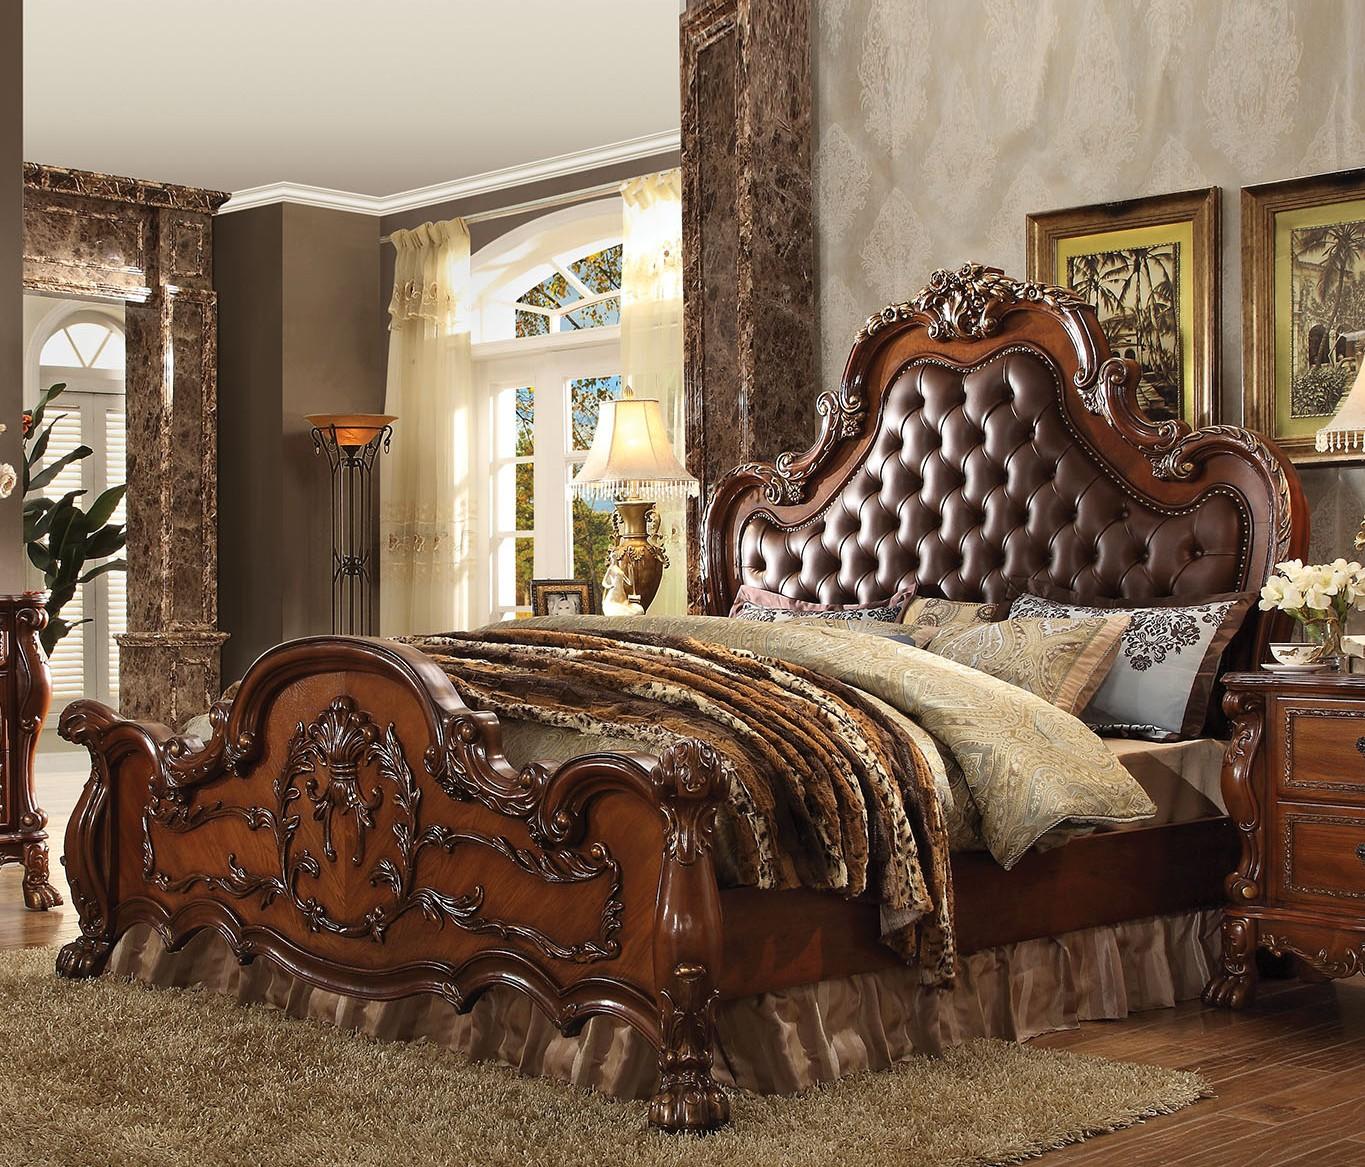 

    
Tufted Cherry Oak Queen Bedroom Set 4Pcs Dresden 23140Q Acme Victorian Classic
